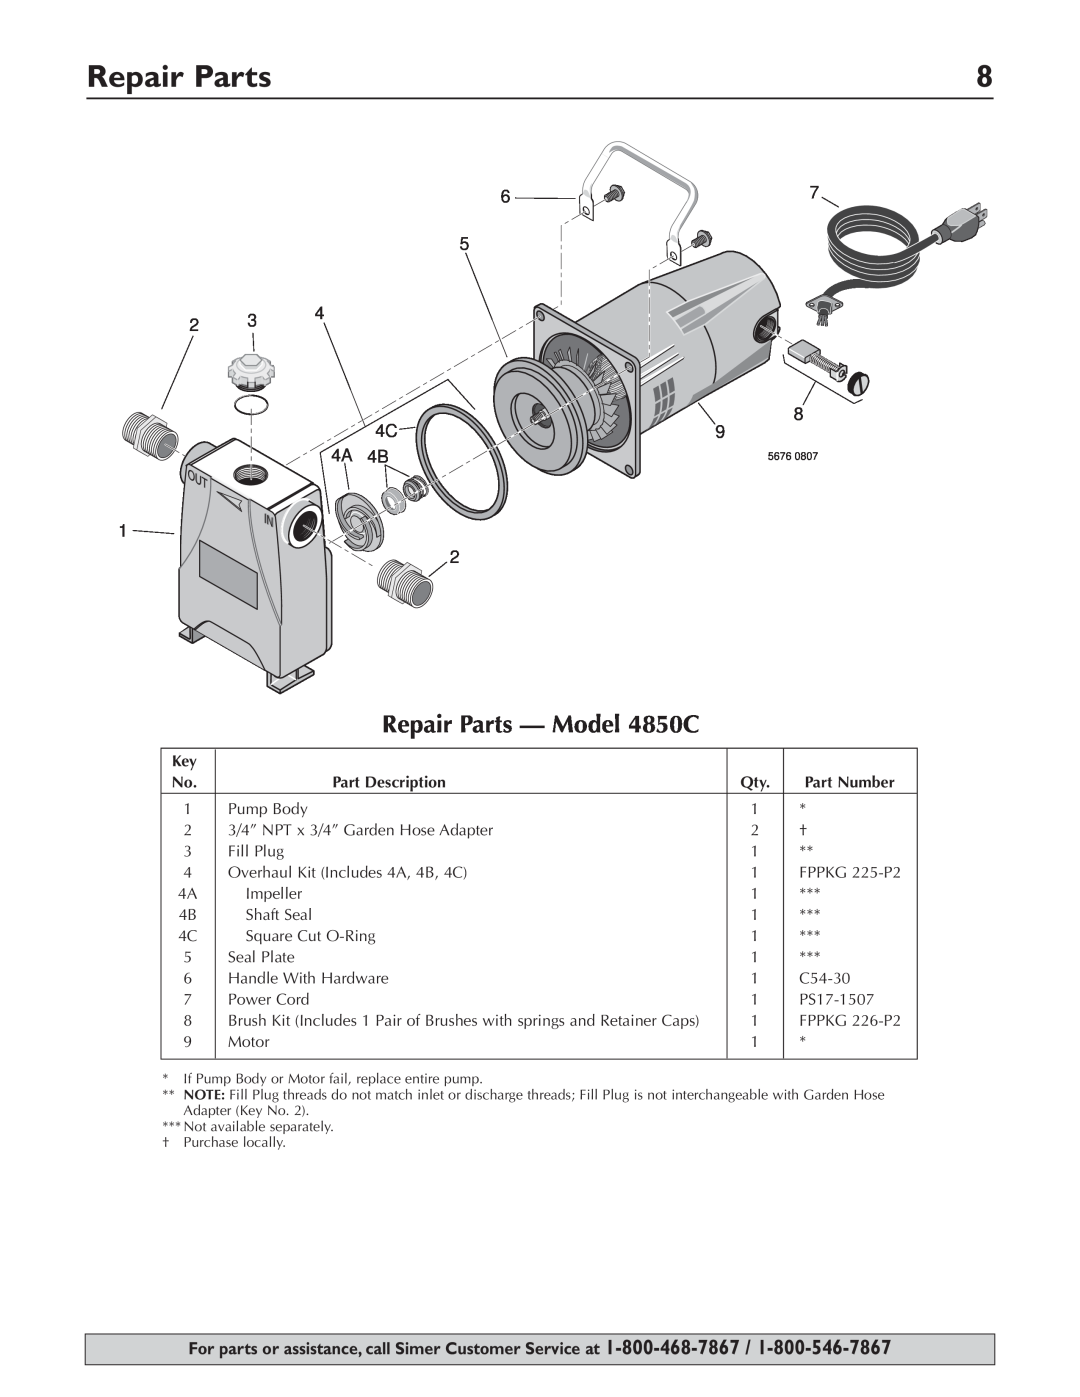 Simer Pumps owner manual Repair Parts - Model 4850C 